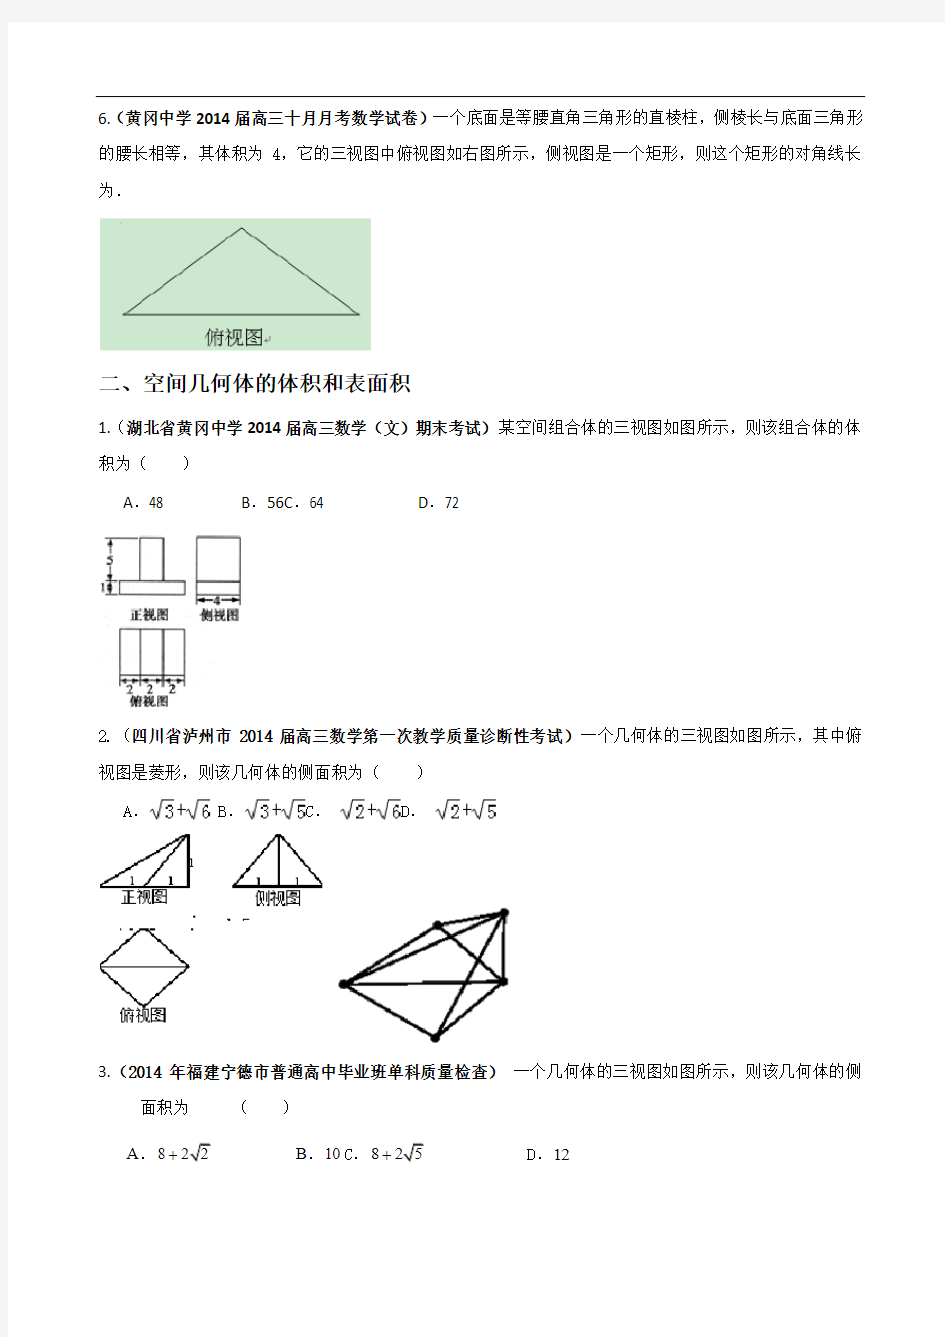 立体几何三视图及体积表面积的求解